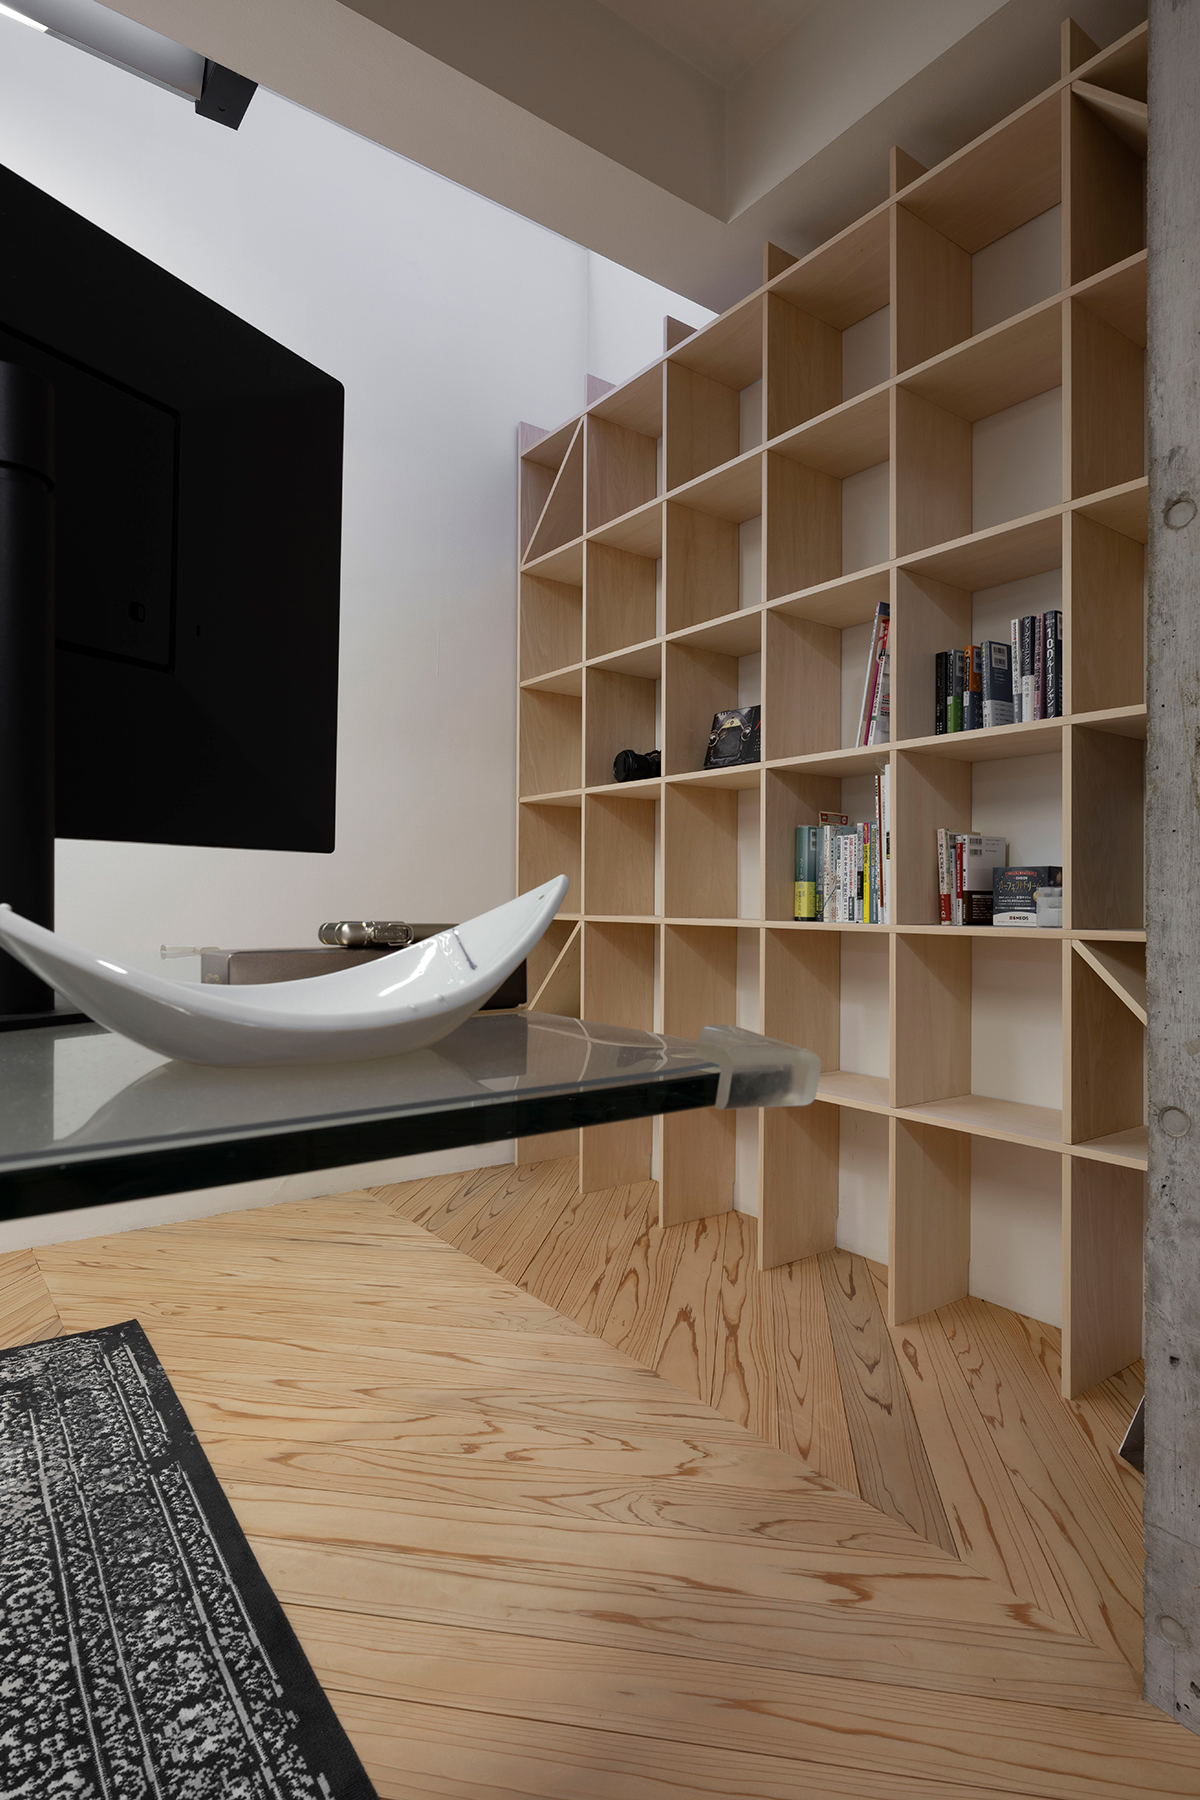 クリエイティブ×テクノロジーの新しいオフィスに | 壁一面の本棚 奥行250mm / Shelf (No.70) | マルゲリータ使用例 シンプル おしゃれ 部屋 インテリア レイアウト